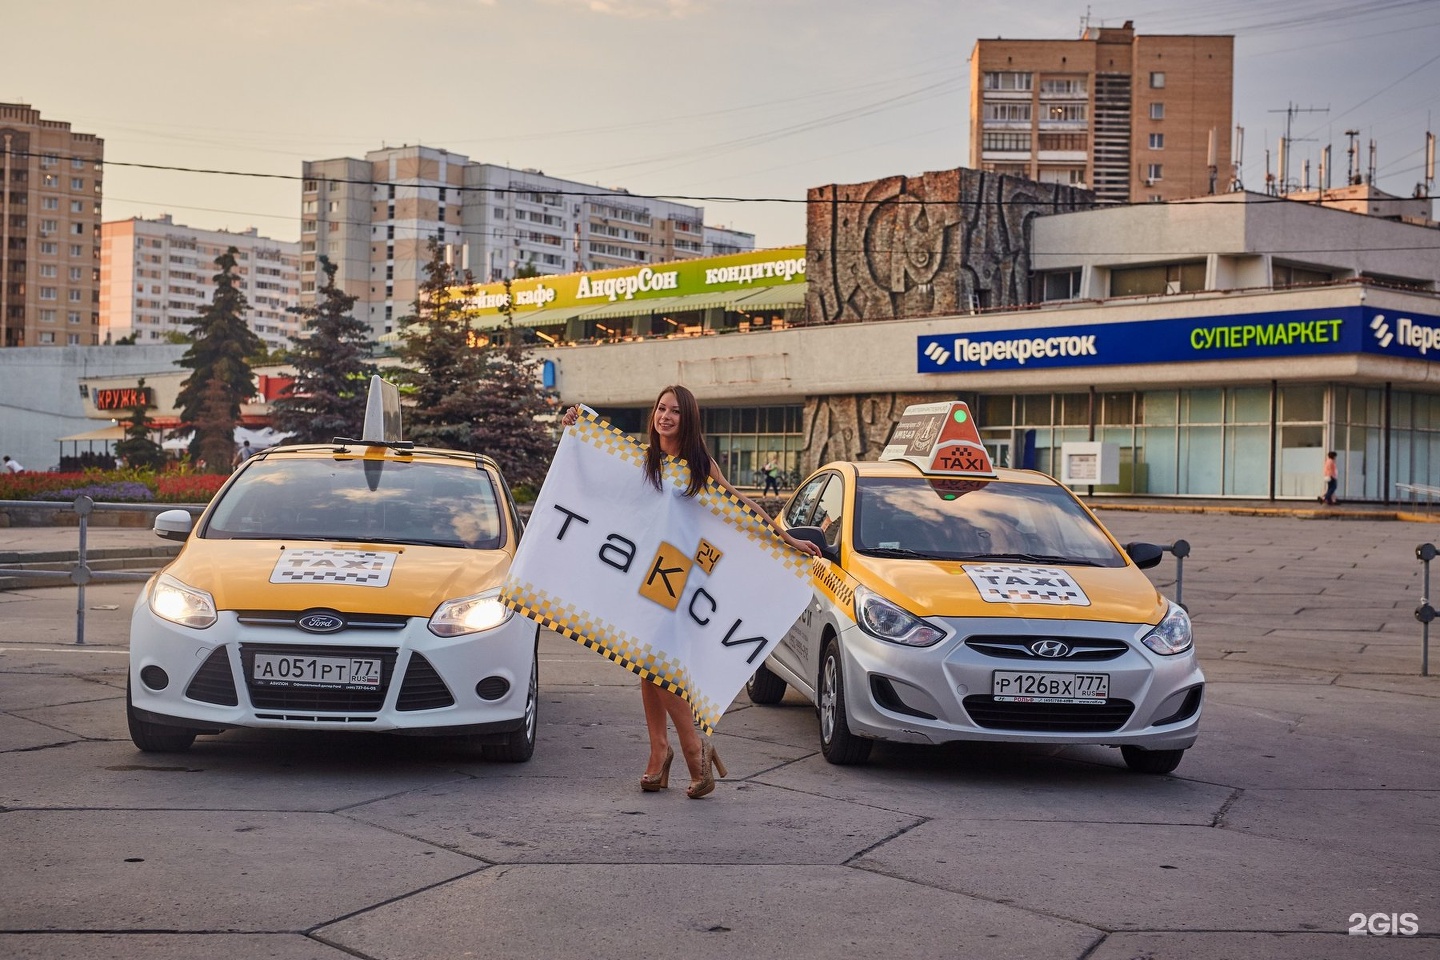 Таксисты работают в москве. Такси Зеленоград. Таксопарк Зеленоград. Такси Москвы, Зеленоград. Дом такси.